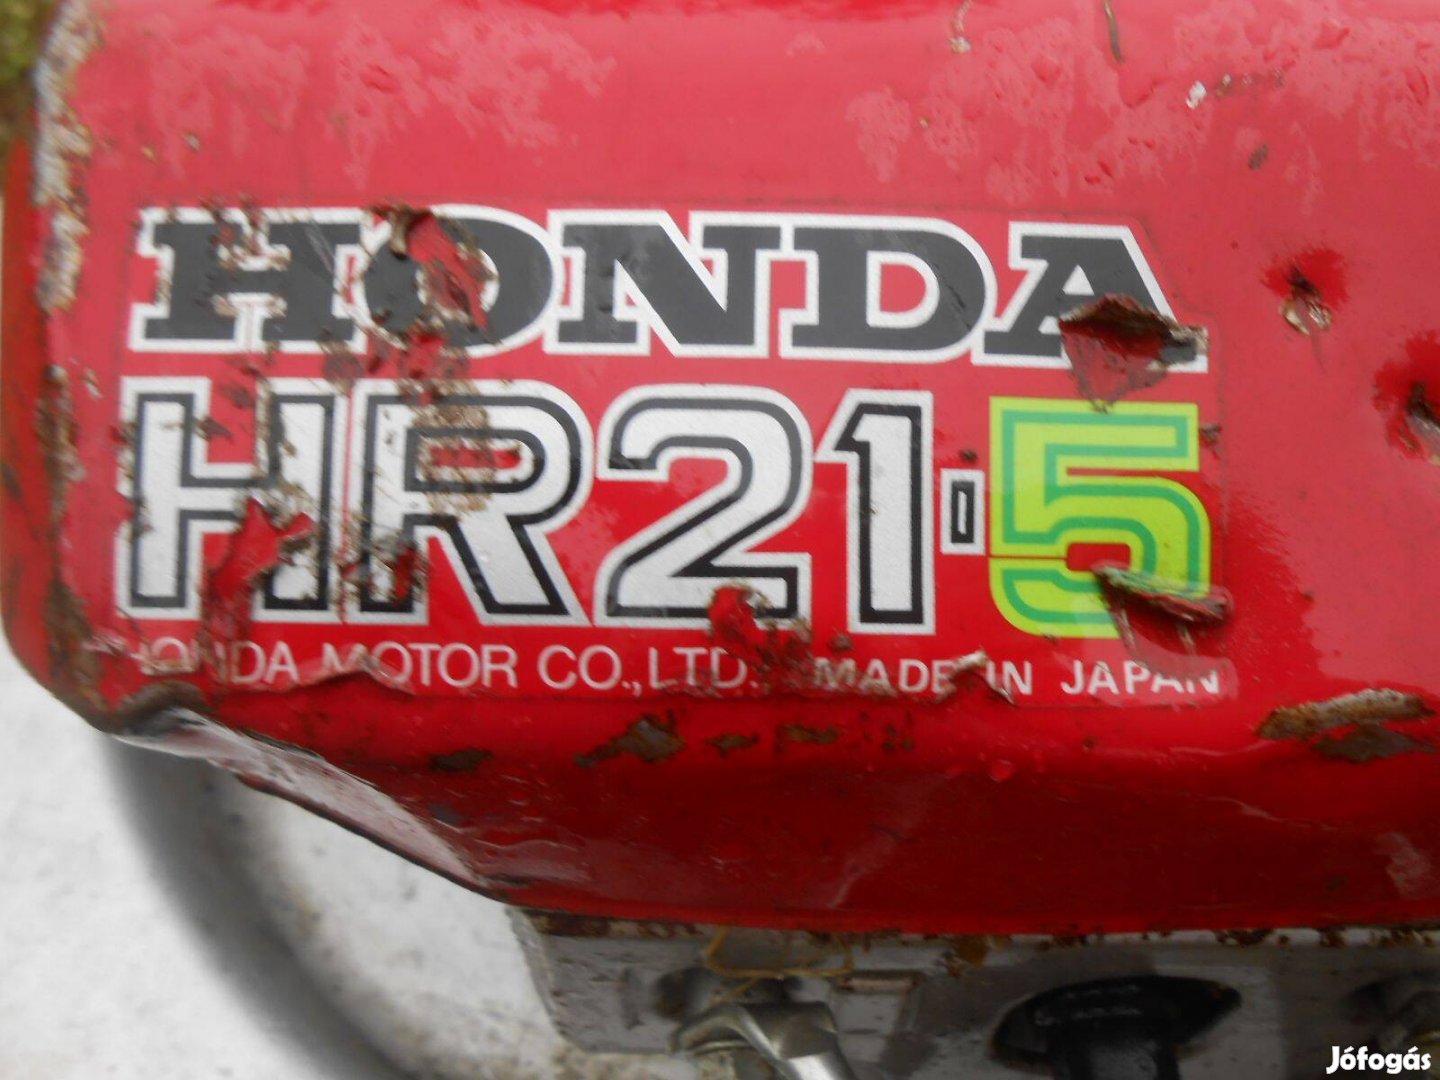 Honda HR 21-5 tipusú 5 lóerős hibás fűnyírógép alkatrésznek